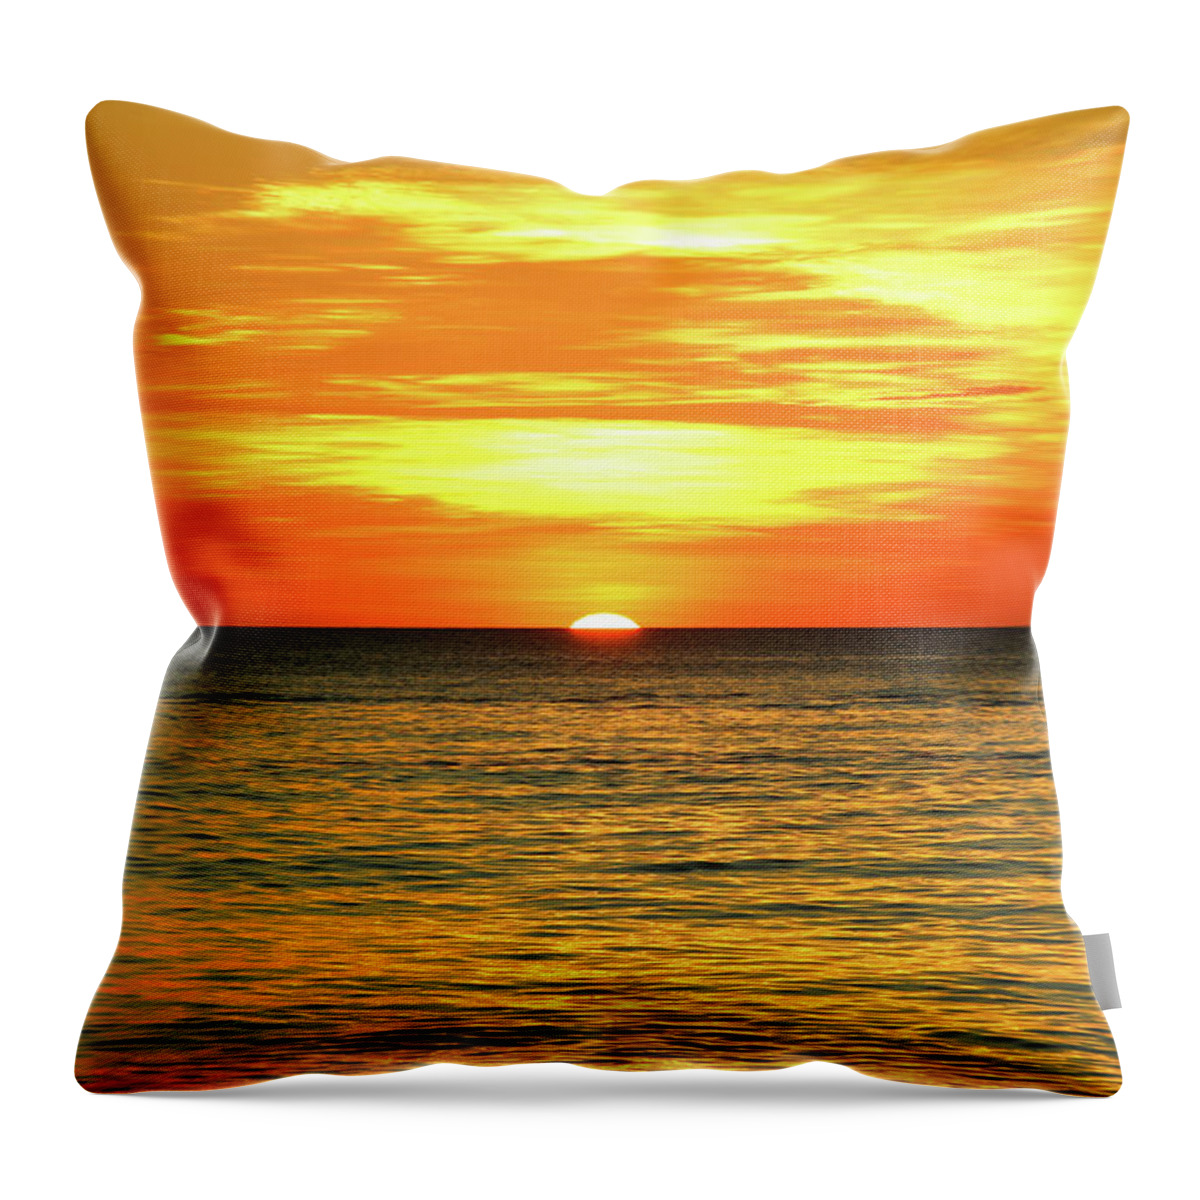 Sunset Throw Pillow featuring the photograph The Sun by Josu Ozkaritz